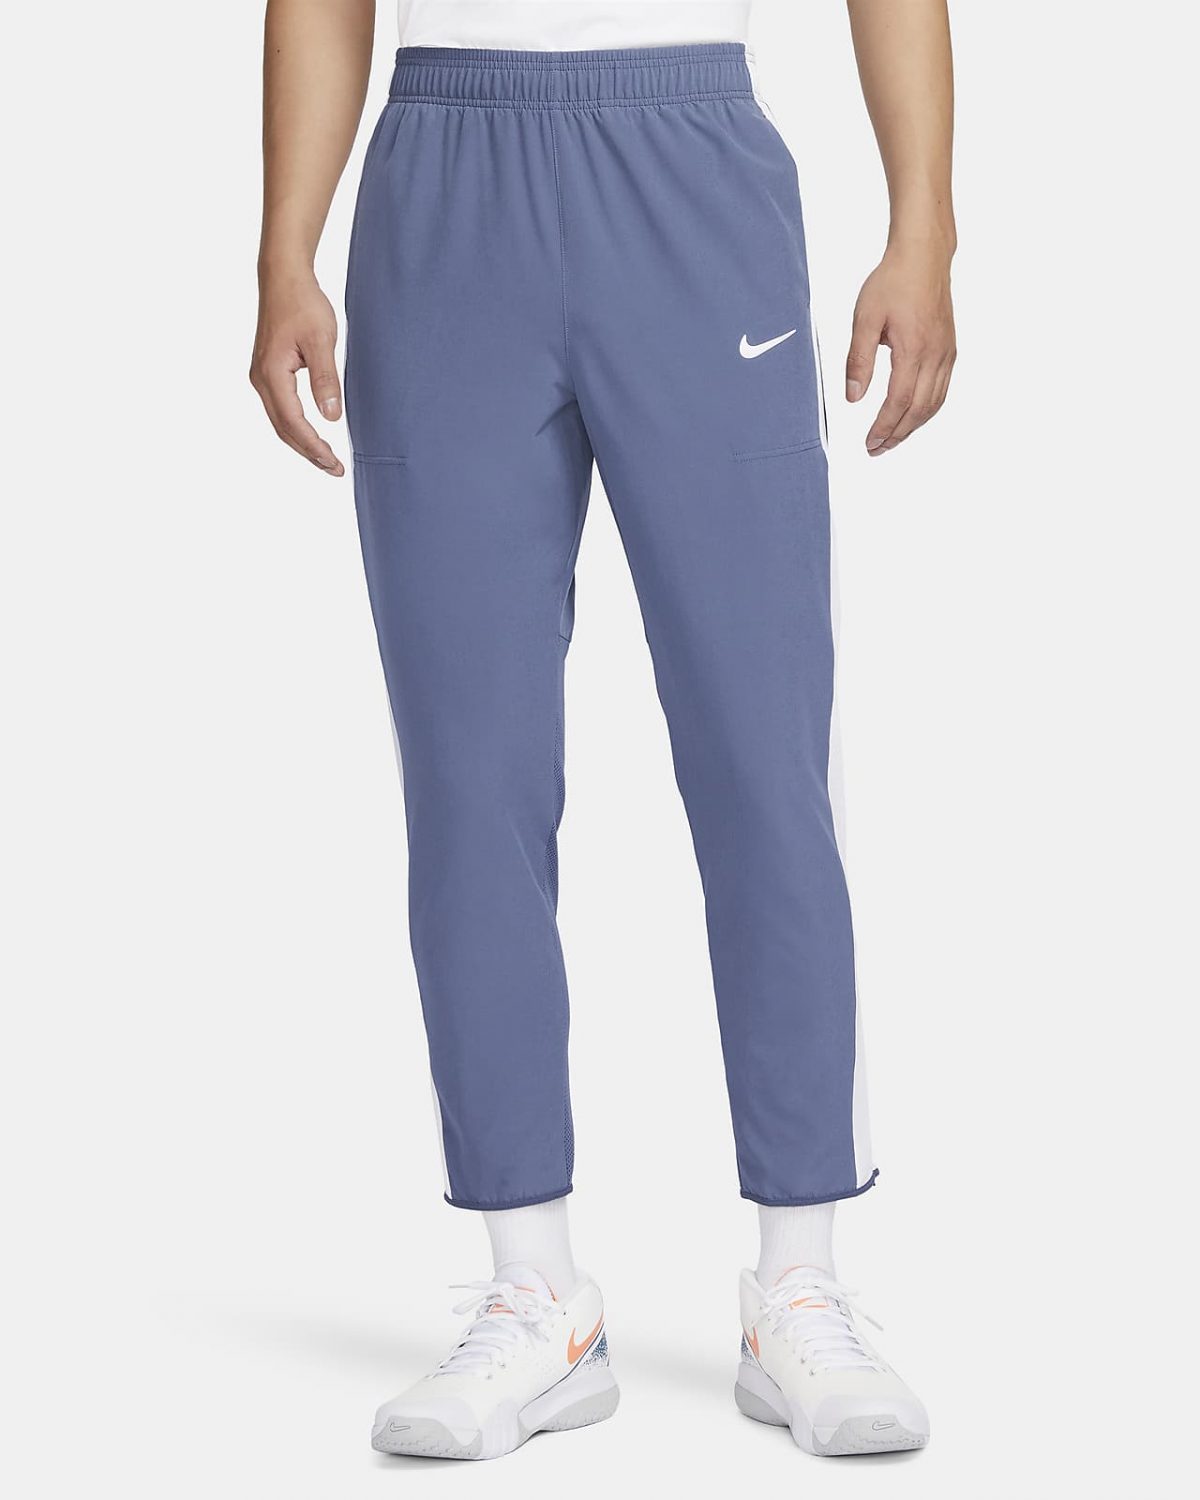 Мужские брюки NikeCourt Advantage фото